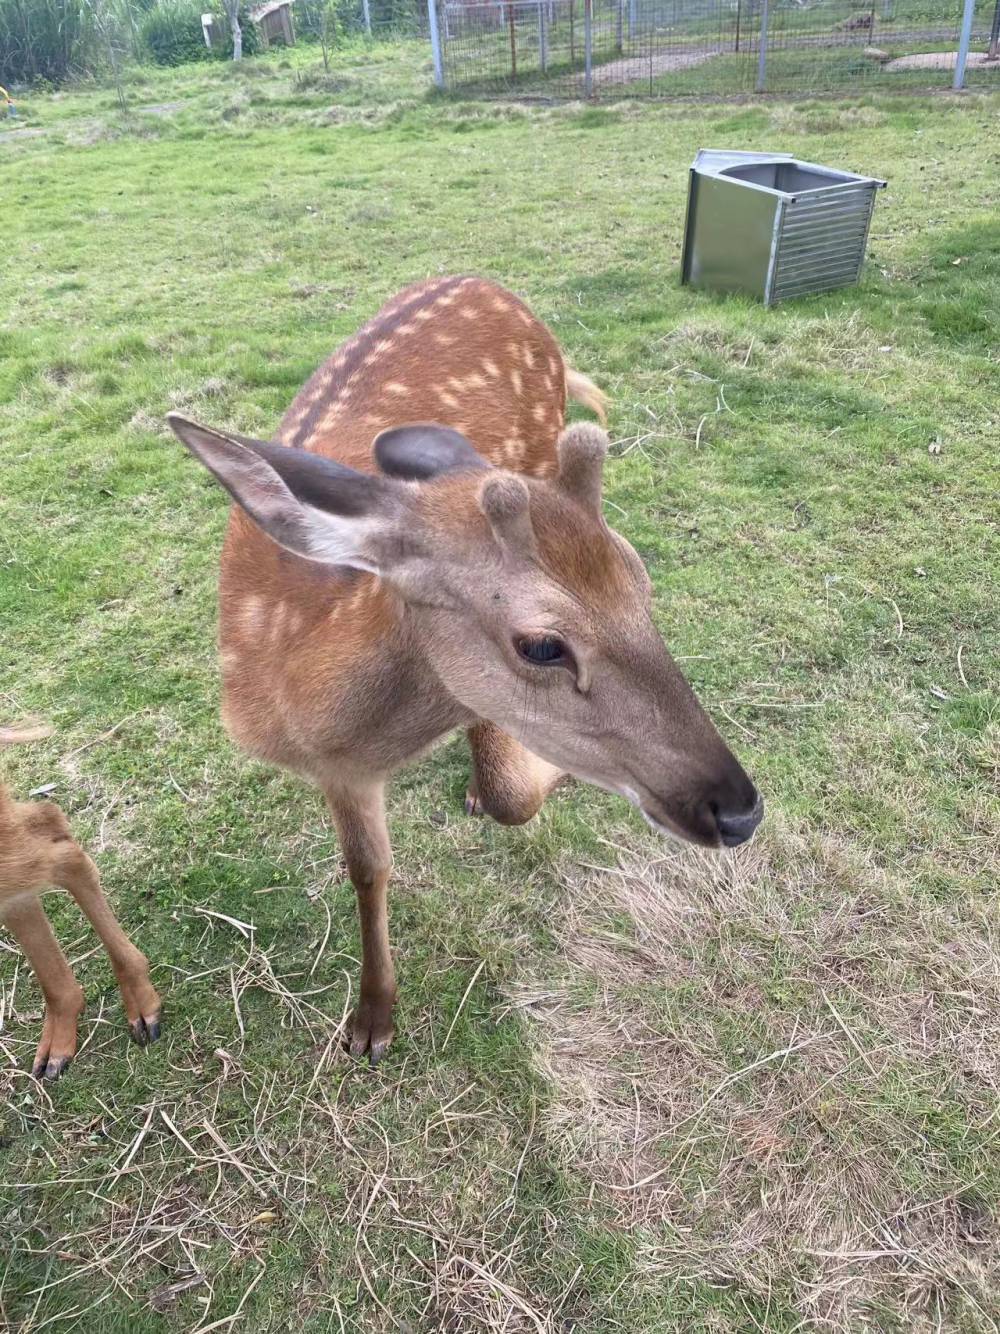 超级可爱的梅花鹿可互动、投喂等来看看吧